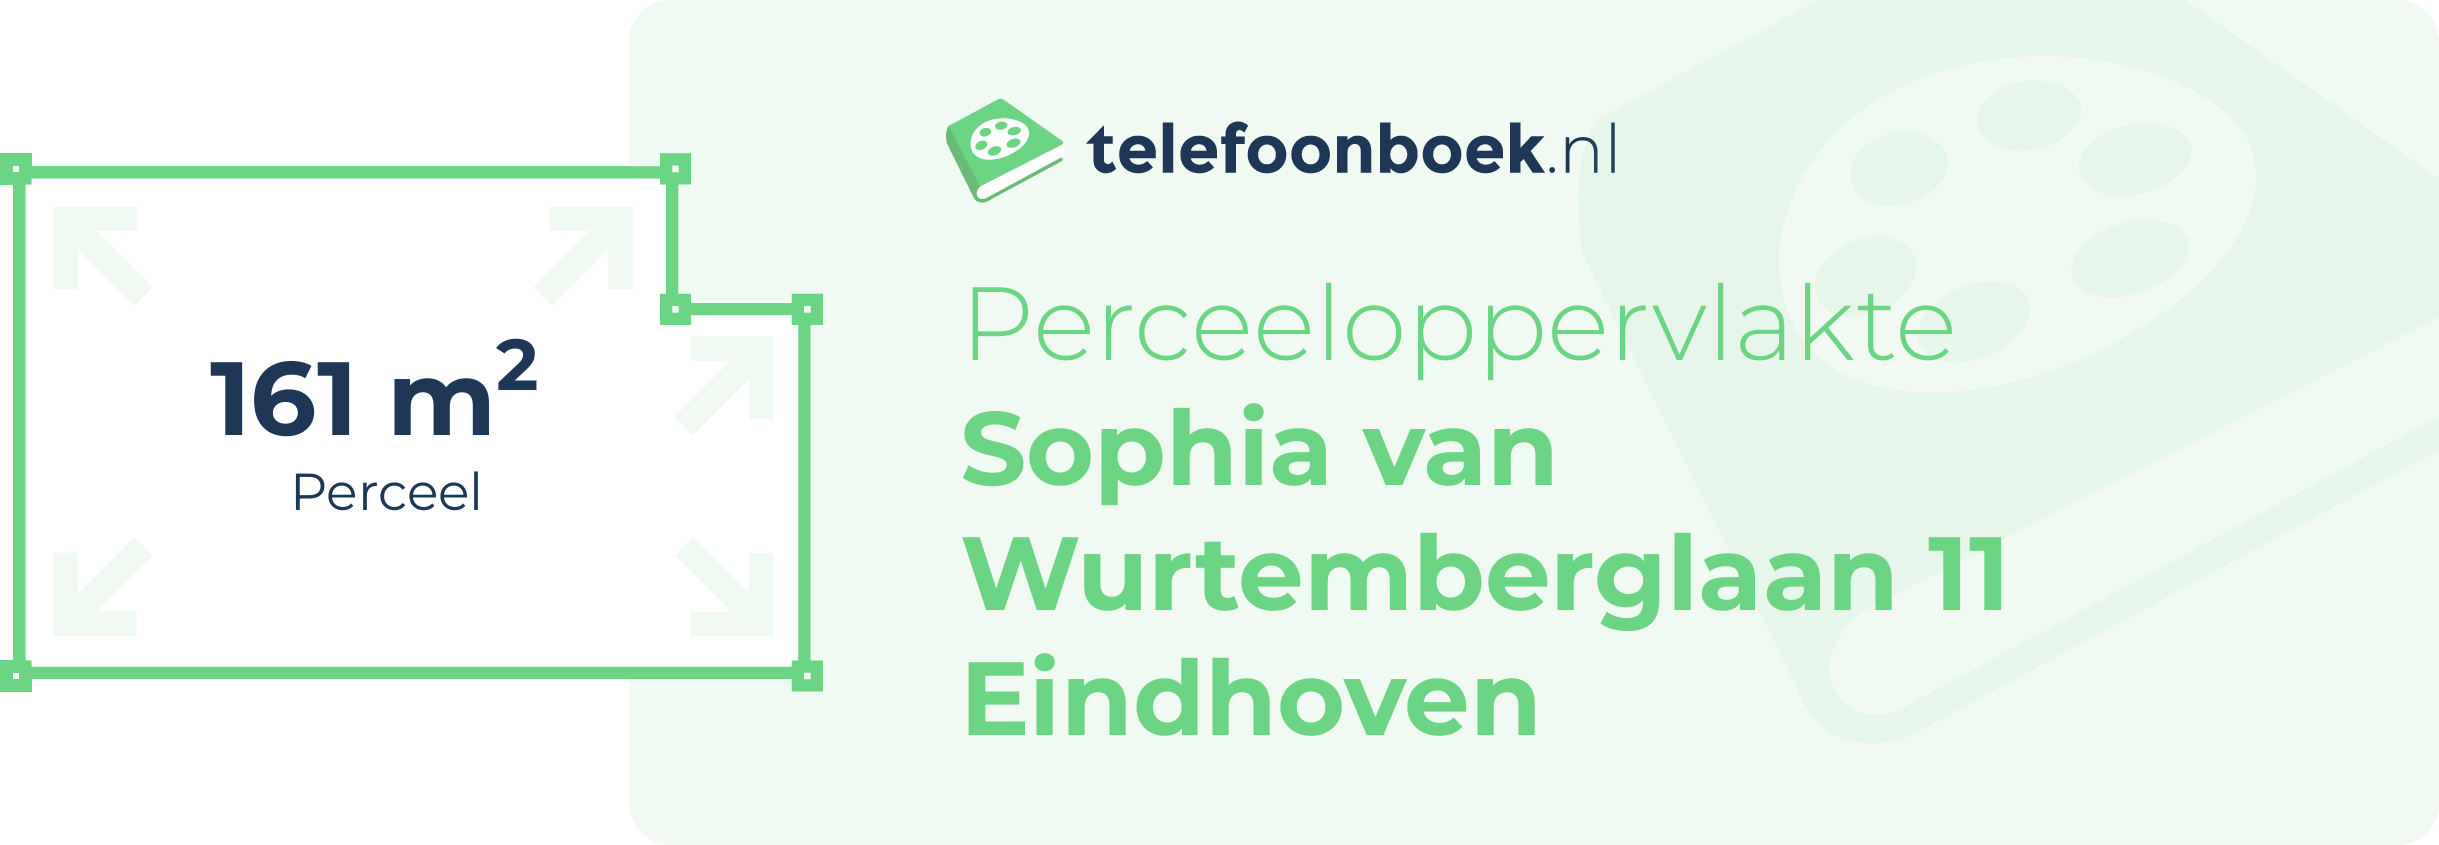 Perceeloppervlakte Sophia Van Wurtemberglaan 11 Eindhoven